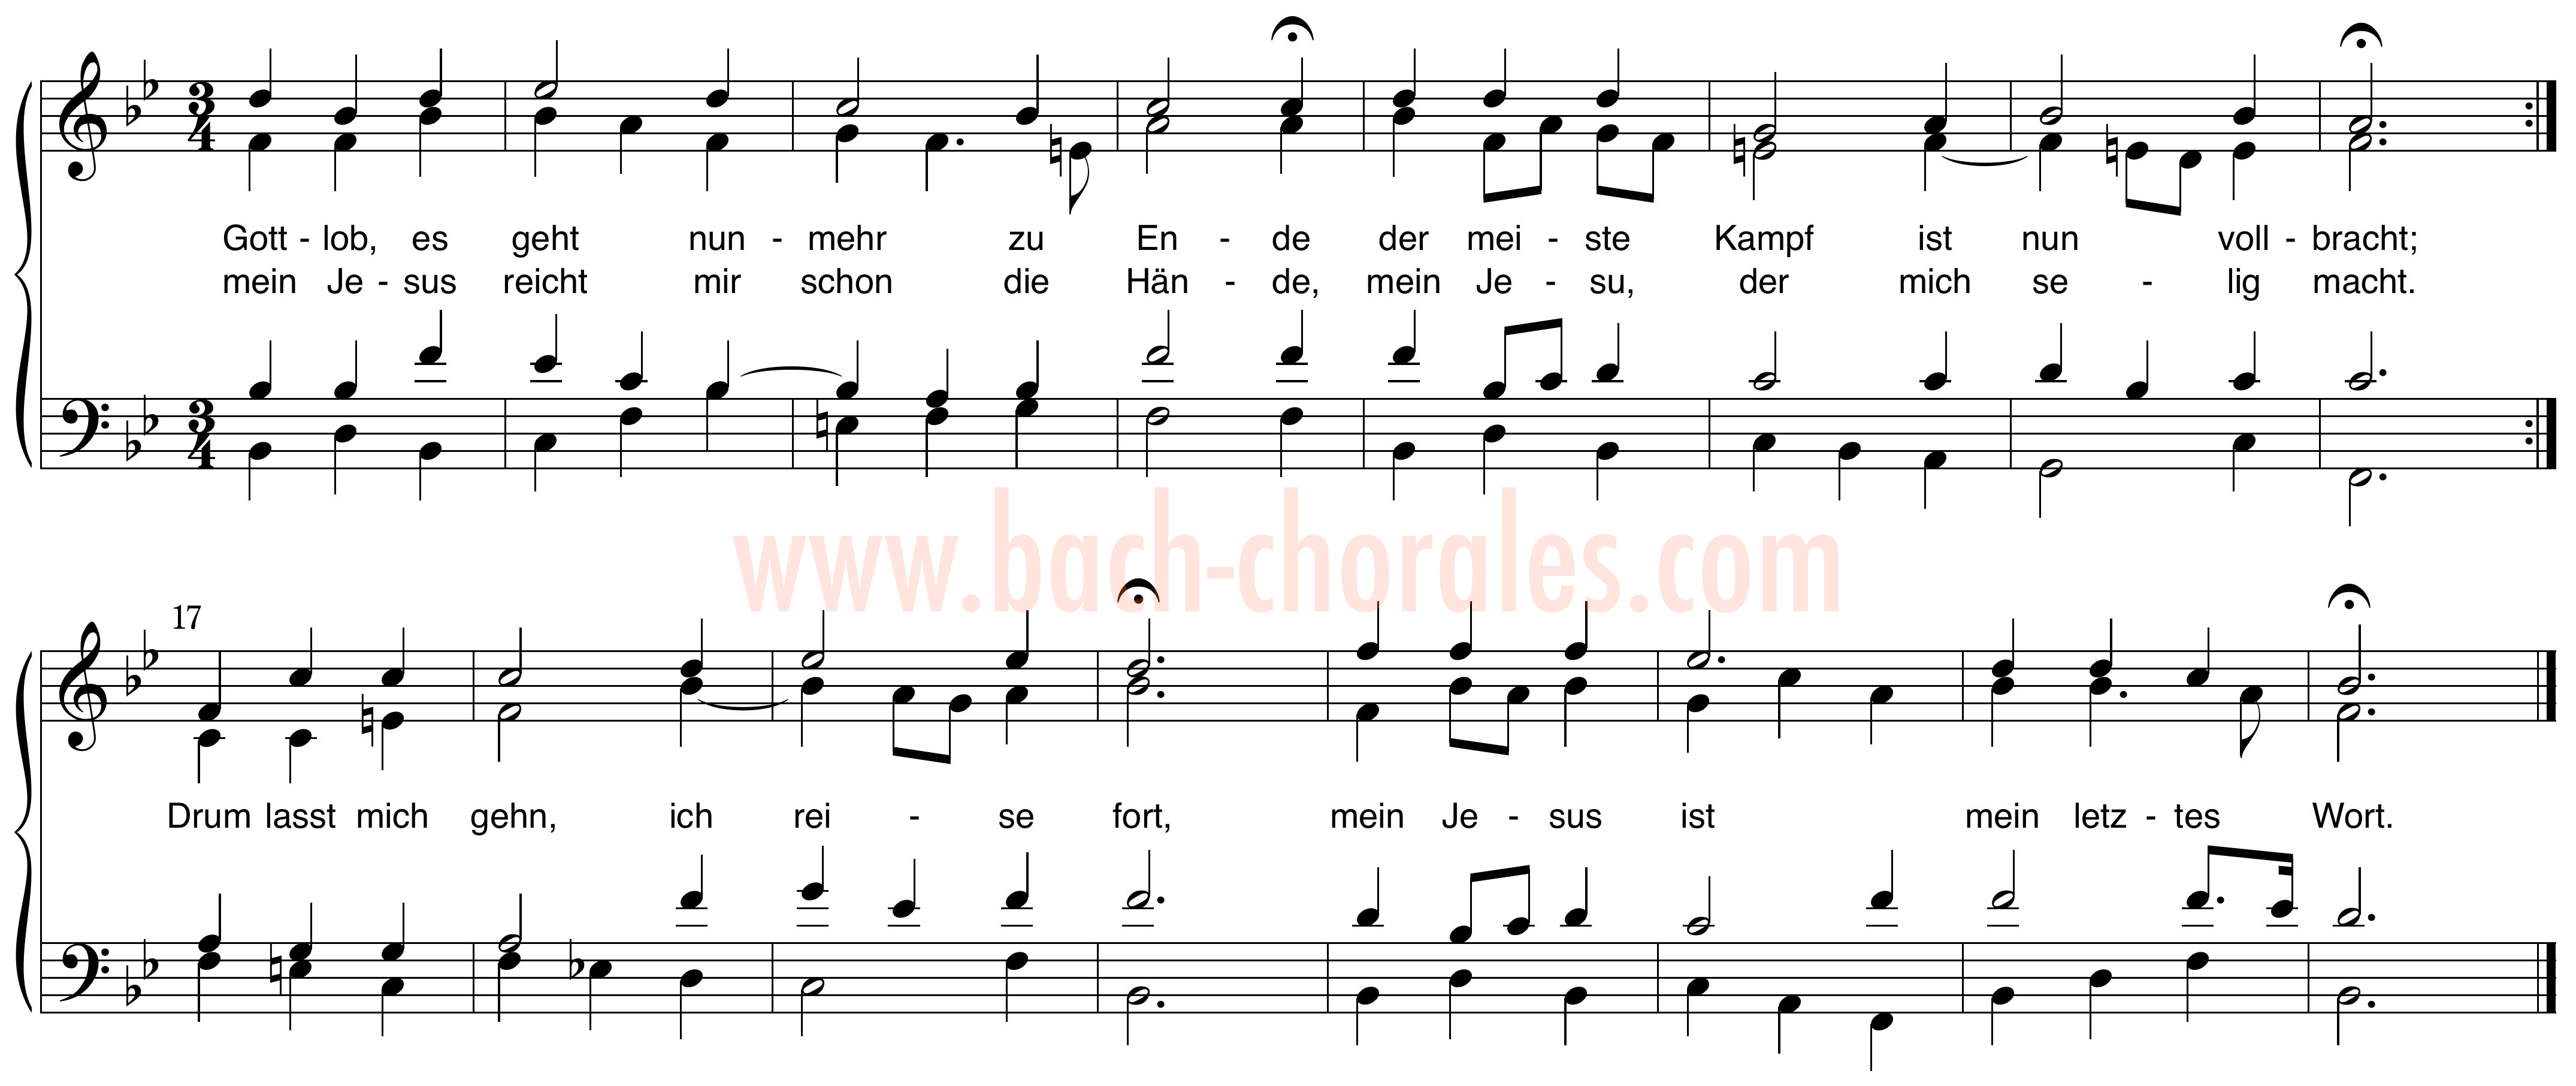 notenbeeld BWV 321 op https://www.bach-chorales.com/